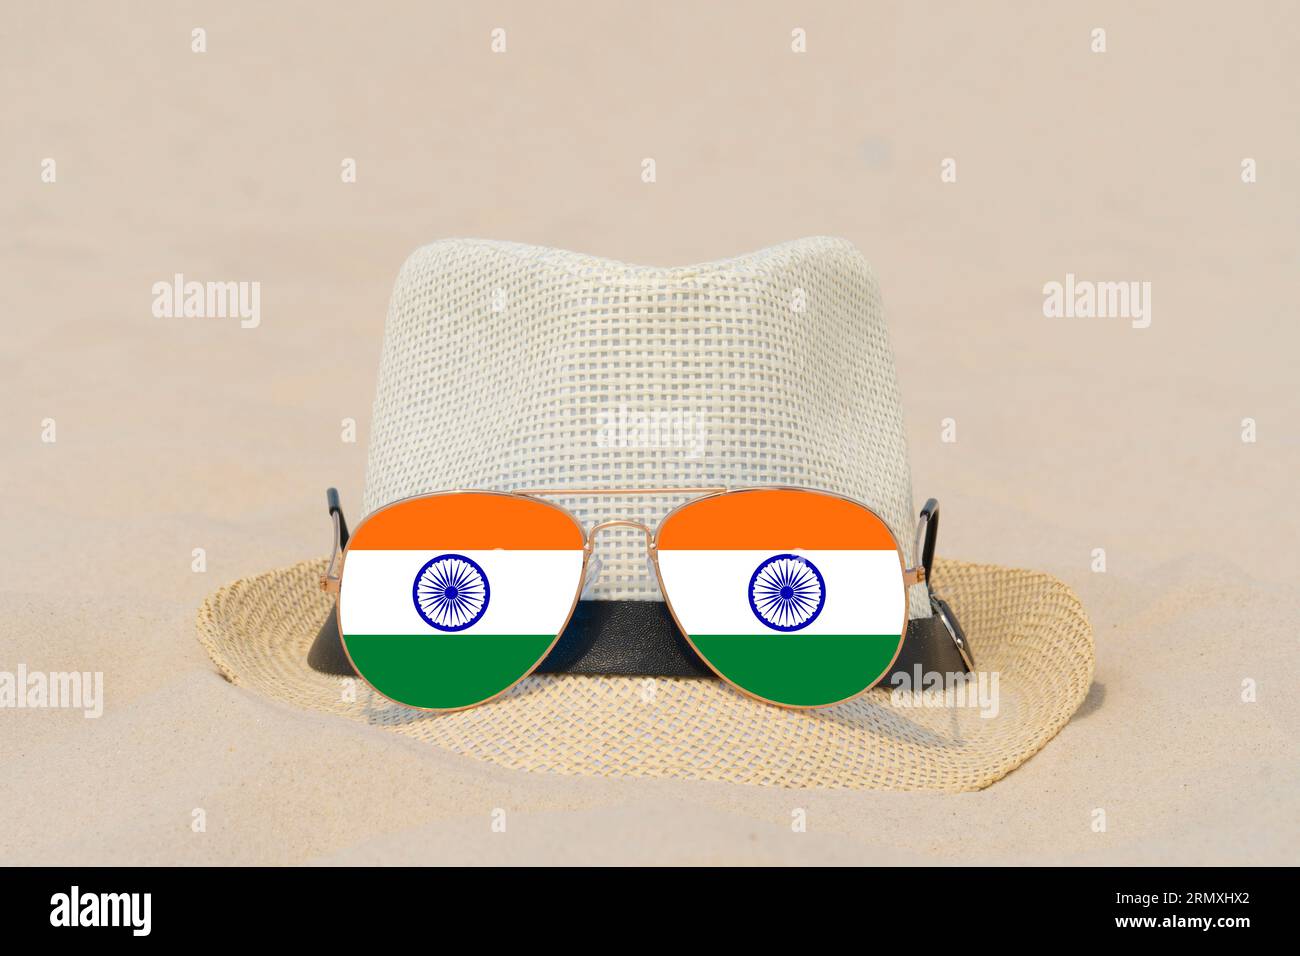 Sonnenbrille mit Brille in Form einer indischen Flagge und einem Hut liegen auf Sand. Konzept von Sommerferien und Reisen in Indien. Sommerruhe. Weihnachtszeit Stockfoto